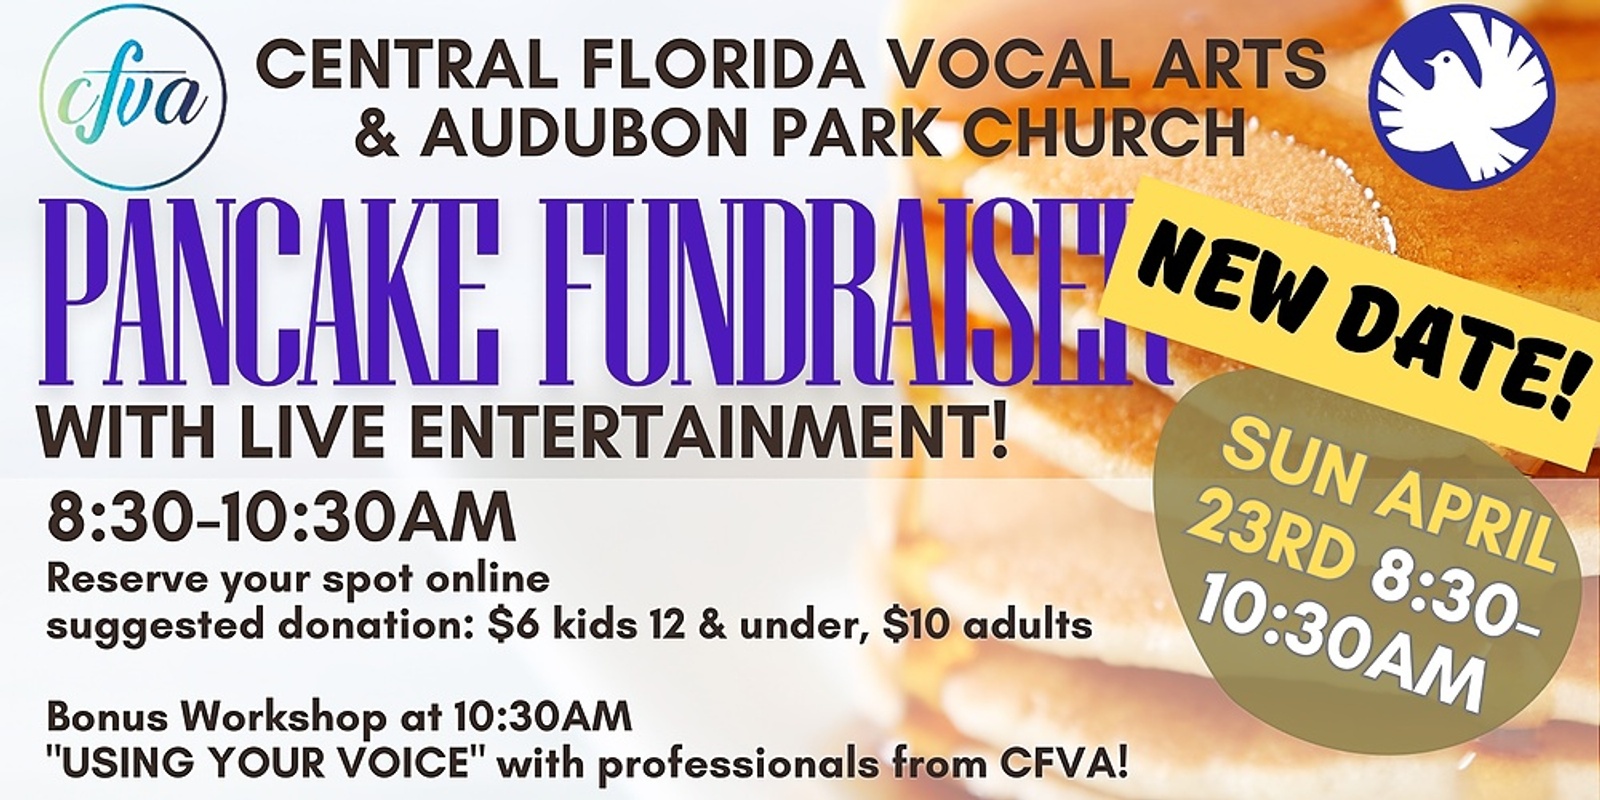 Banner image for CFVA & Audubon Park Church Pancake Breakfast Fundraiser 